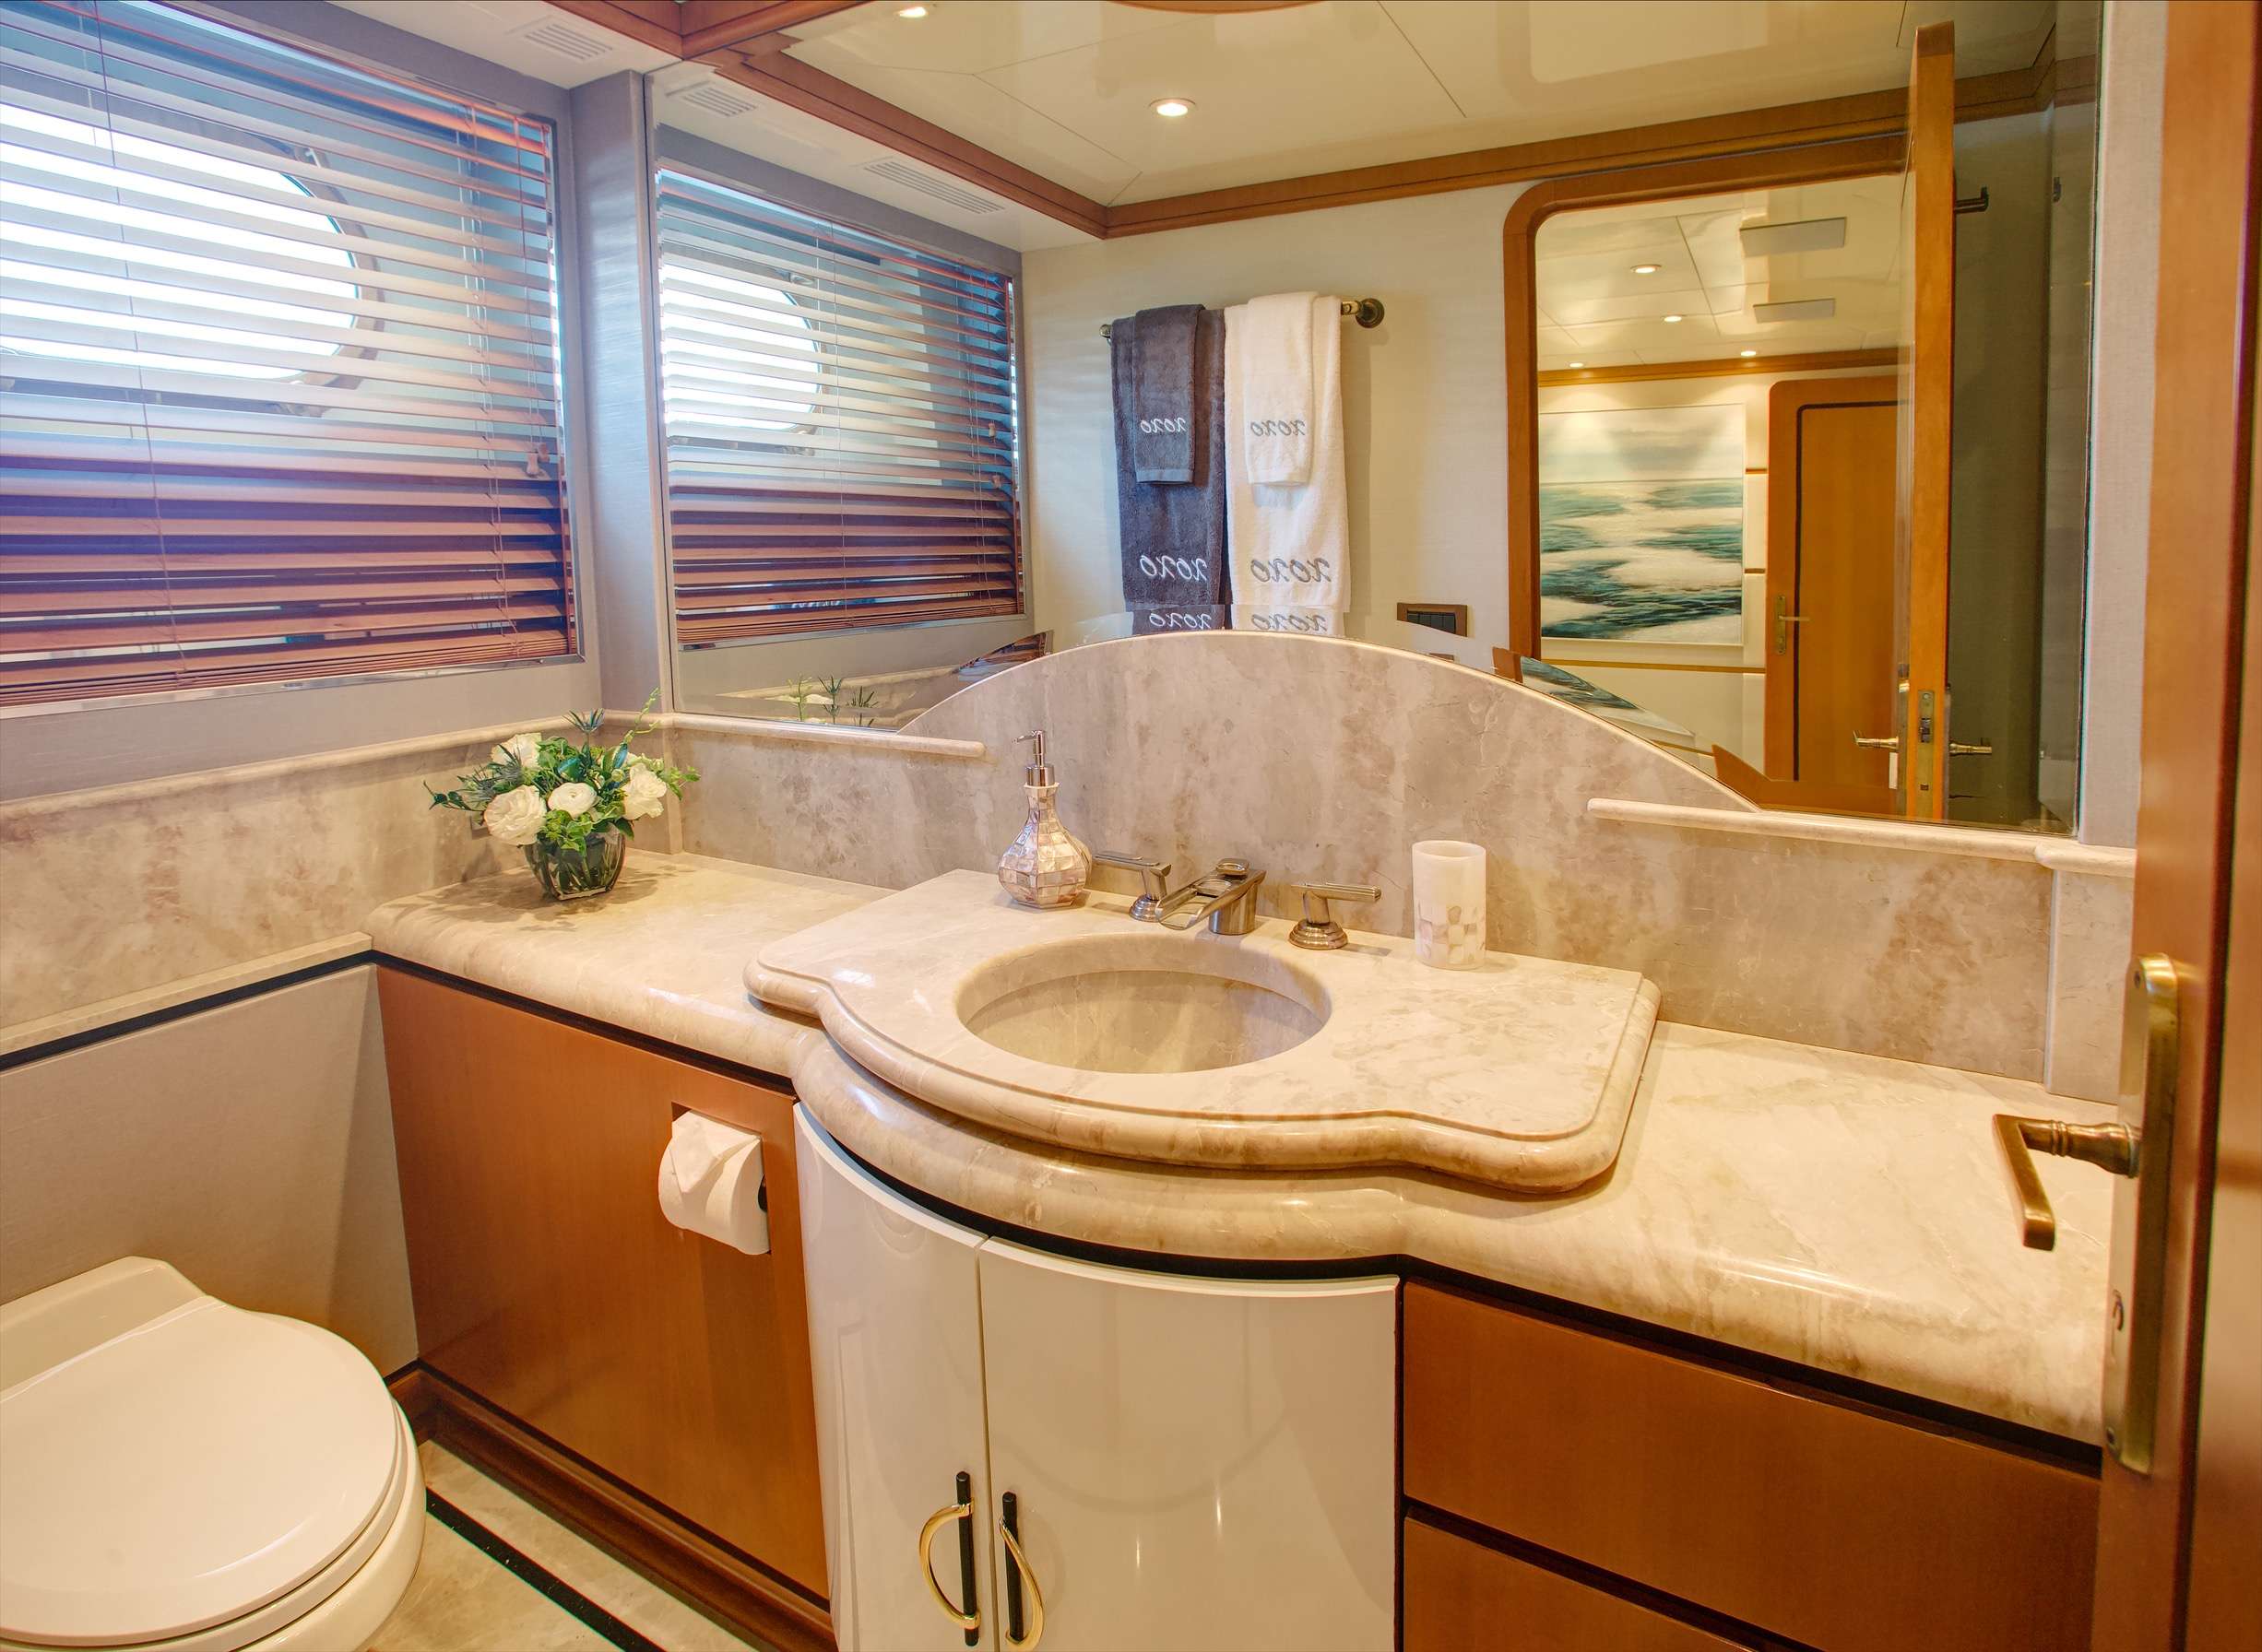 XOXO (118') Yacht Charter - Queen Guest Bathroom